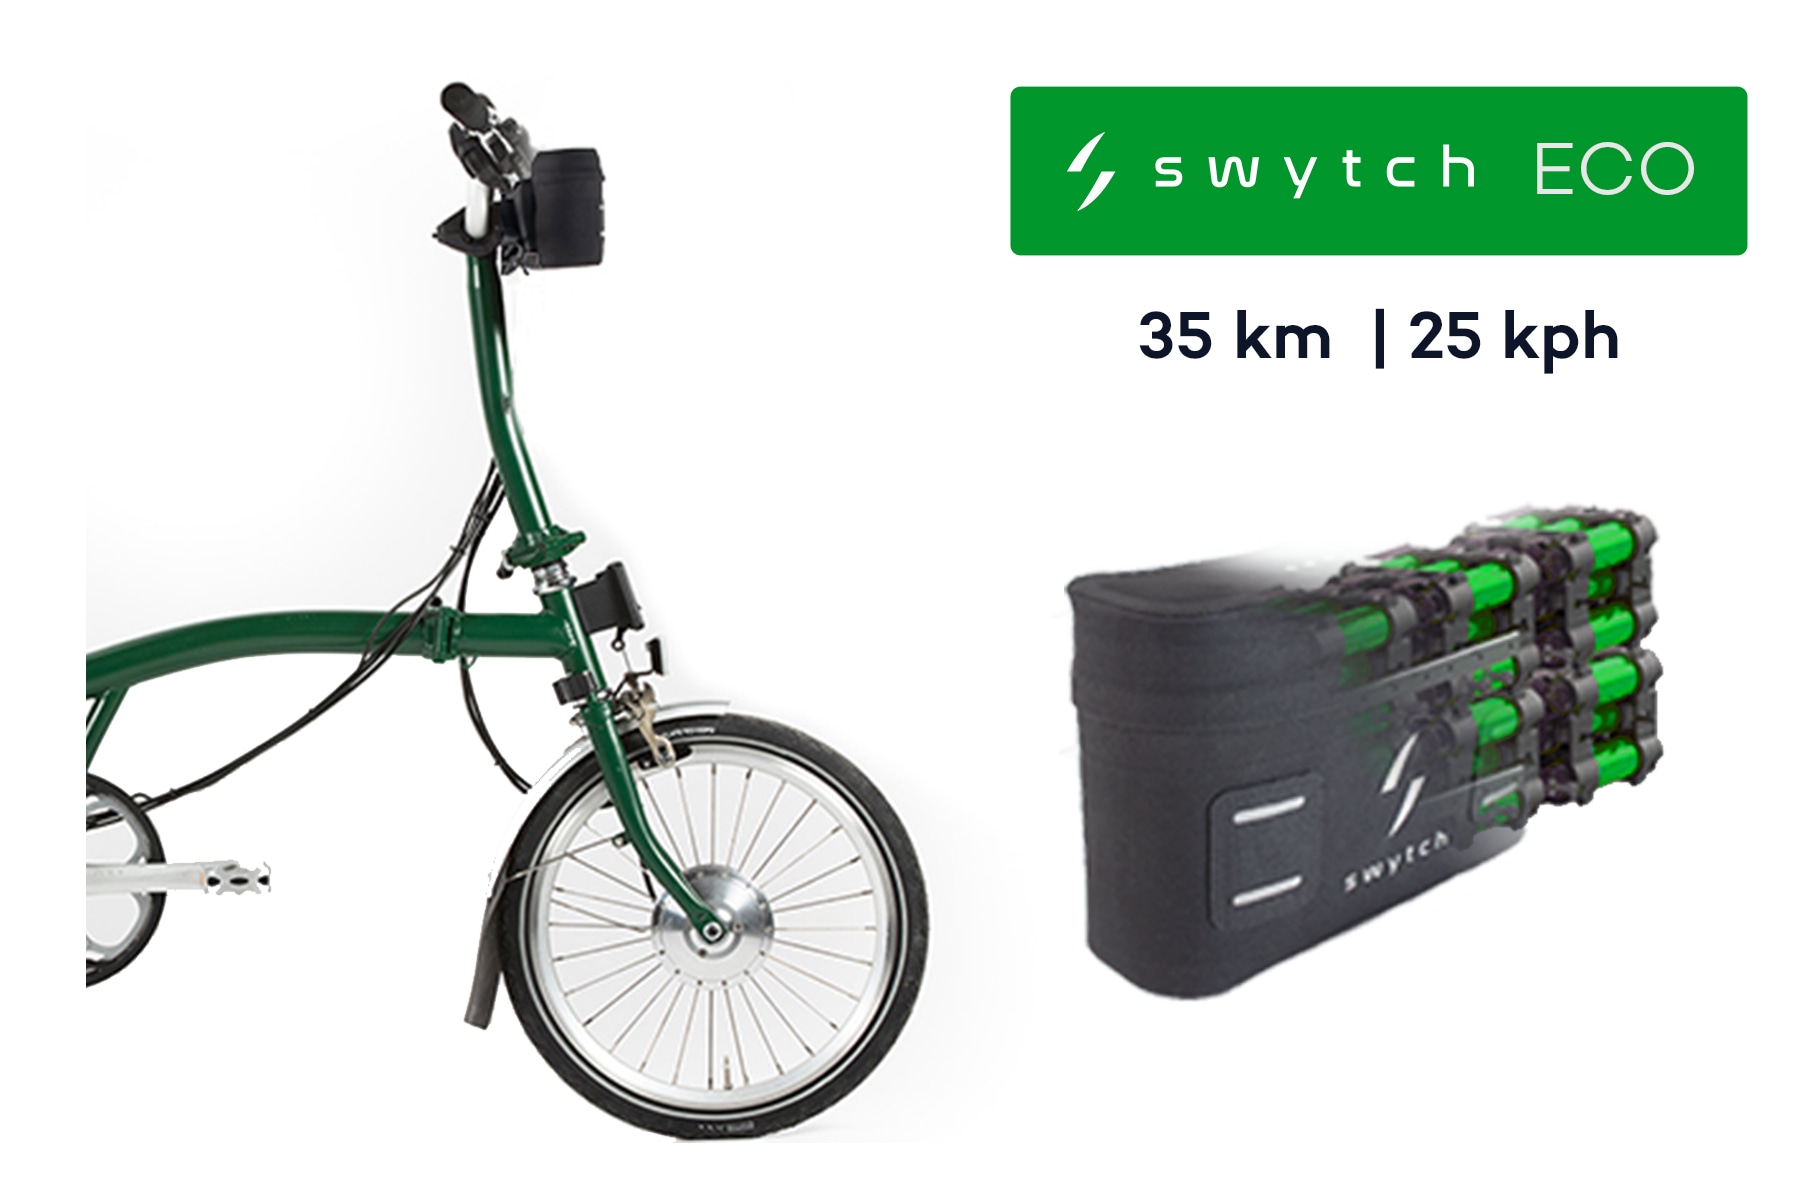 swytch bike brompton electric conversion kit